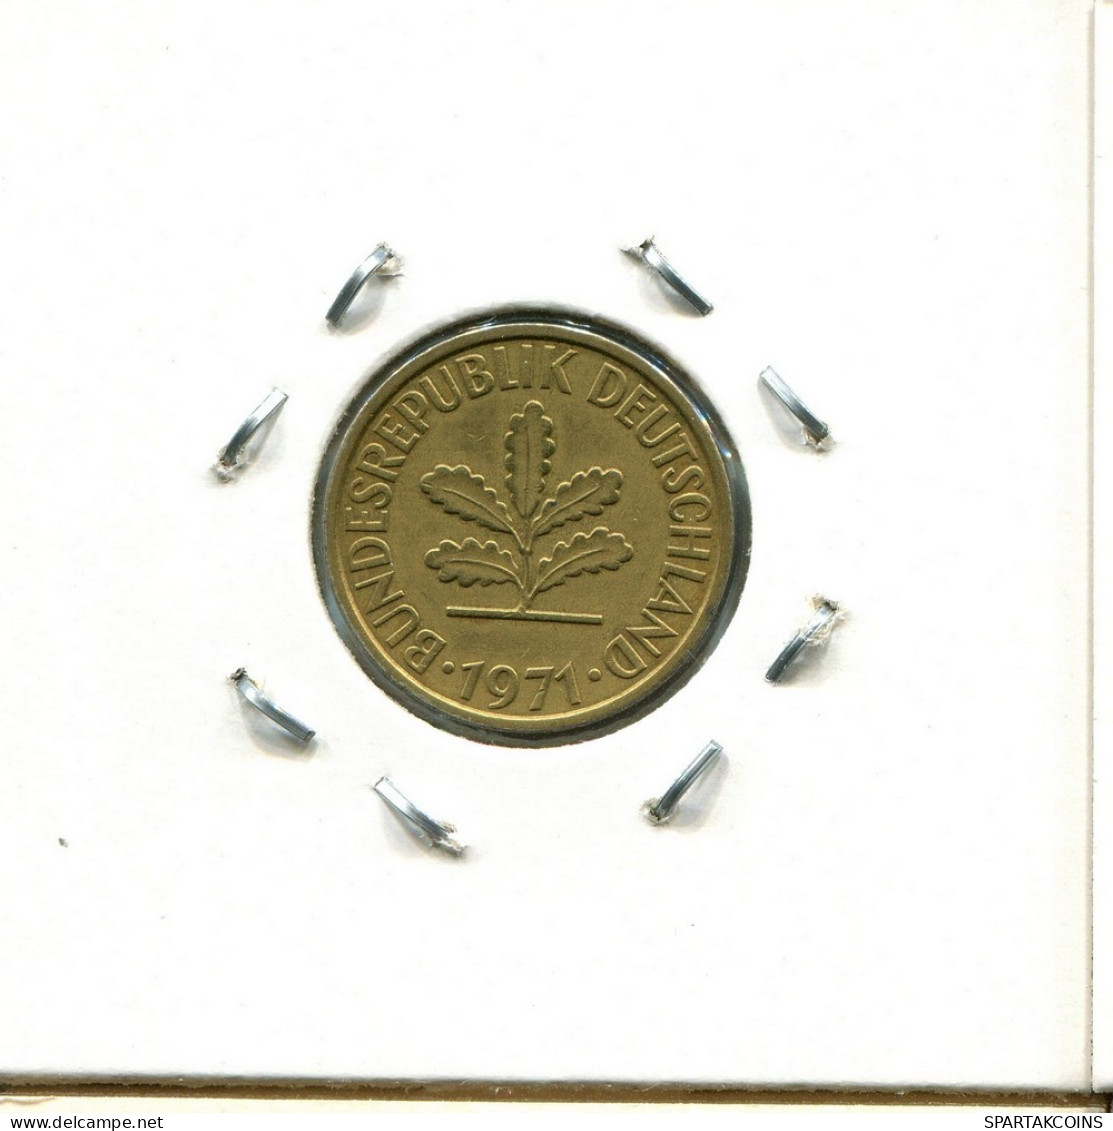 5 PFENNIG 1971 J BRD ALEMANIA Moneda GERMANY #DC384.E.A - 5 Pfennig